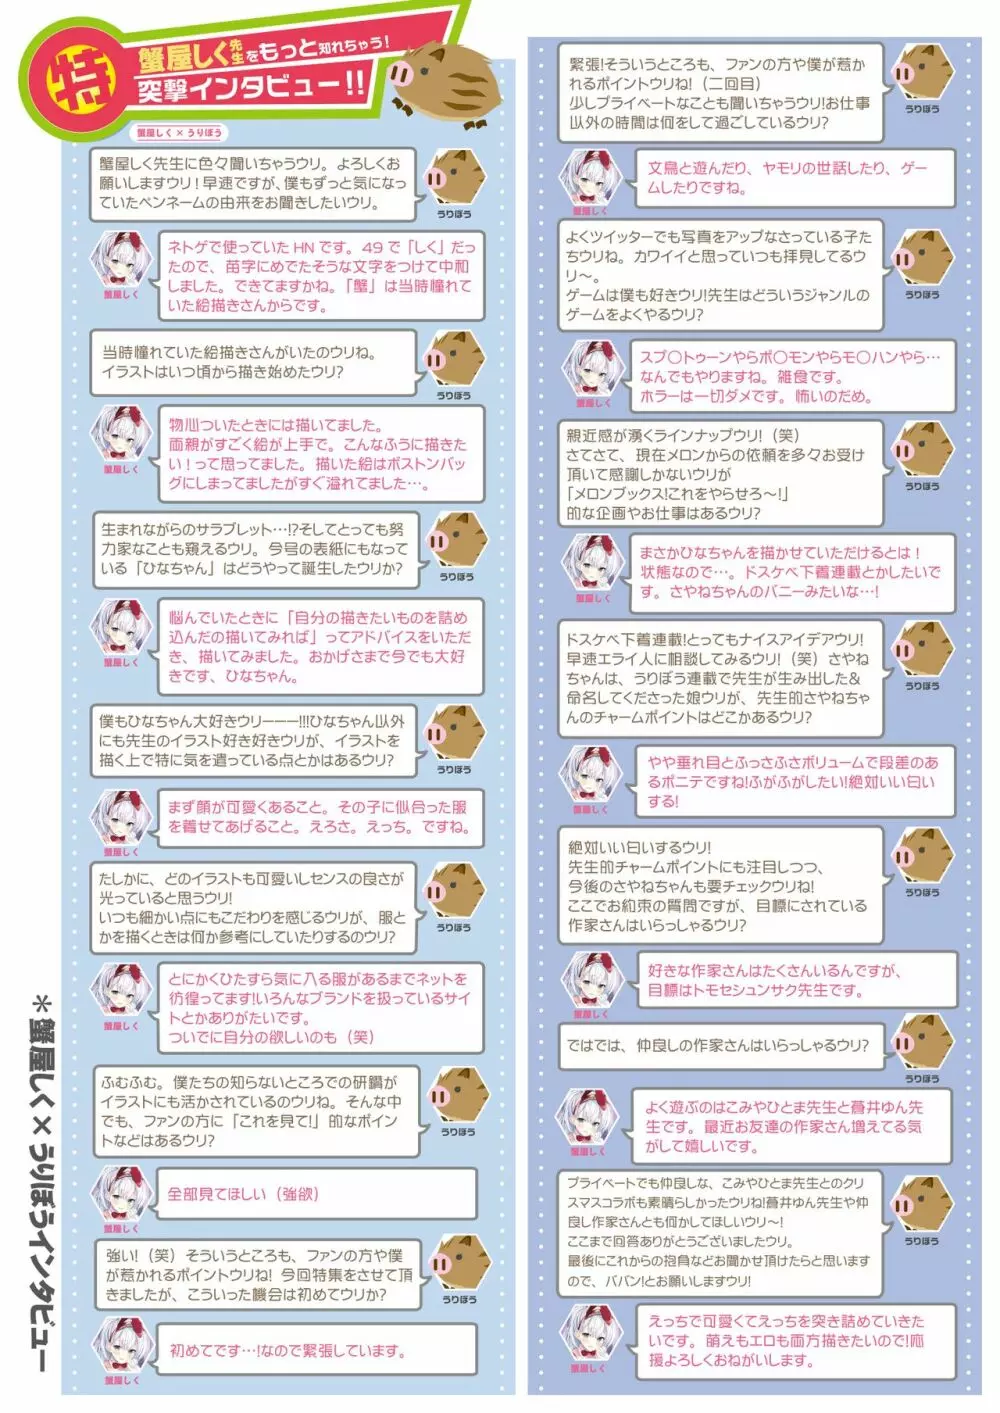 うりぼうざっか店 2020年4月3日発行号 5ページ